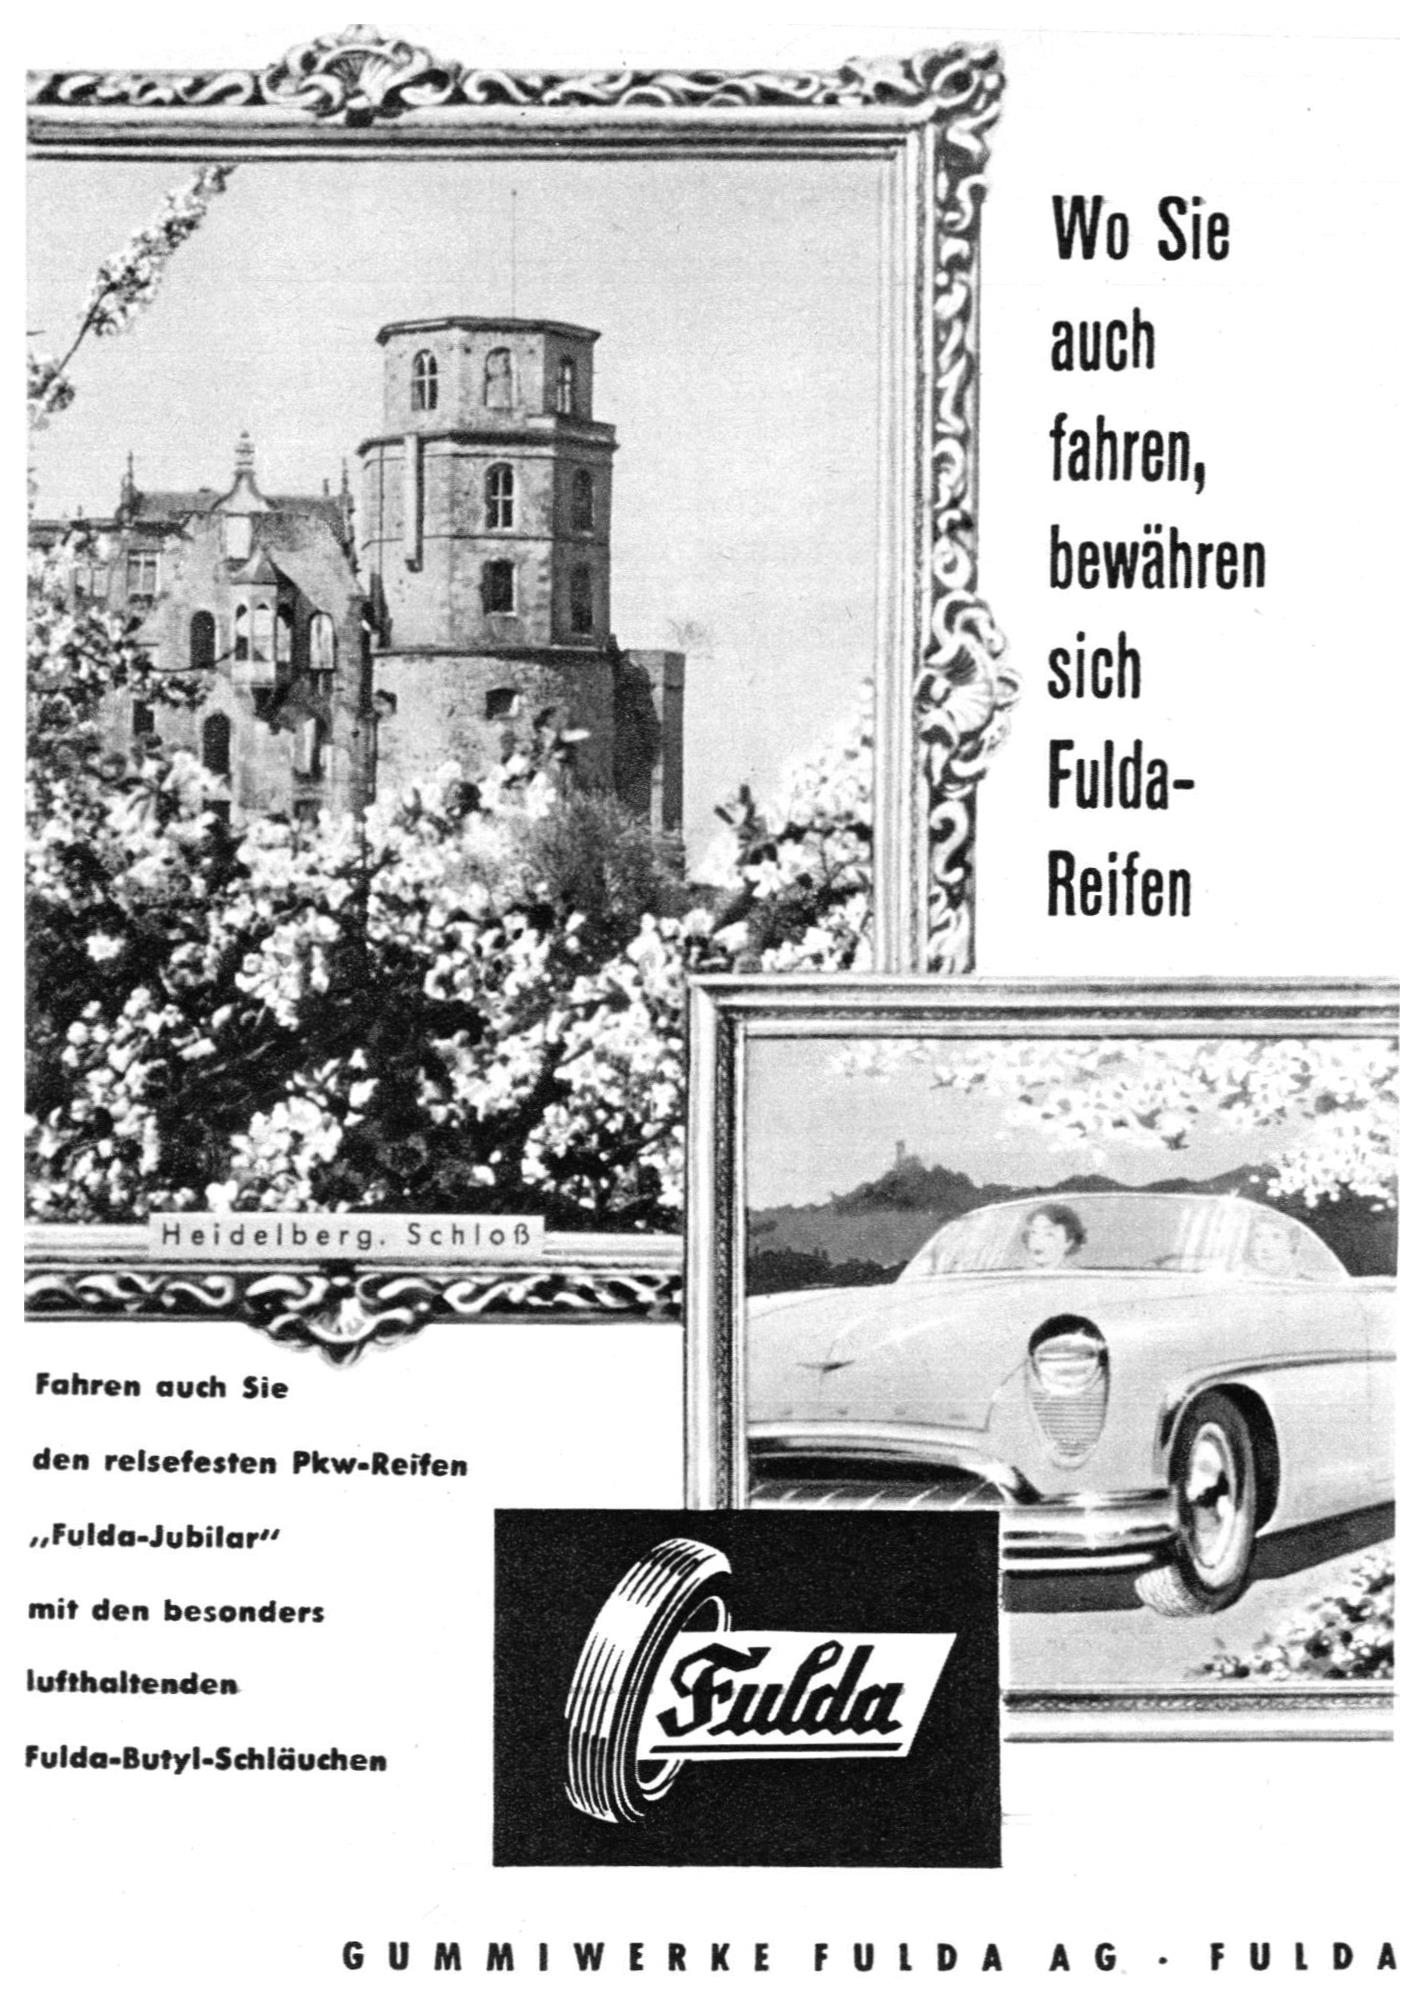 Fulda 1953 0.jpg